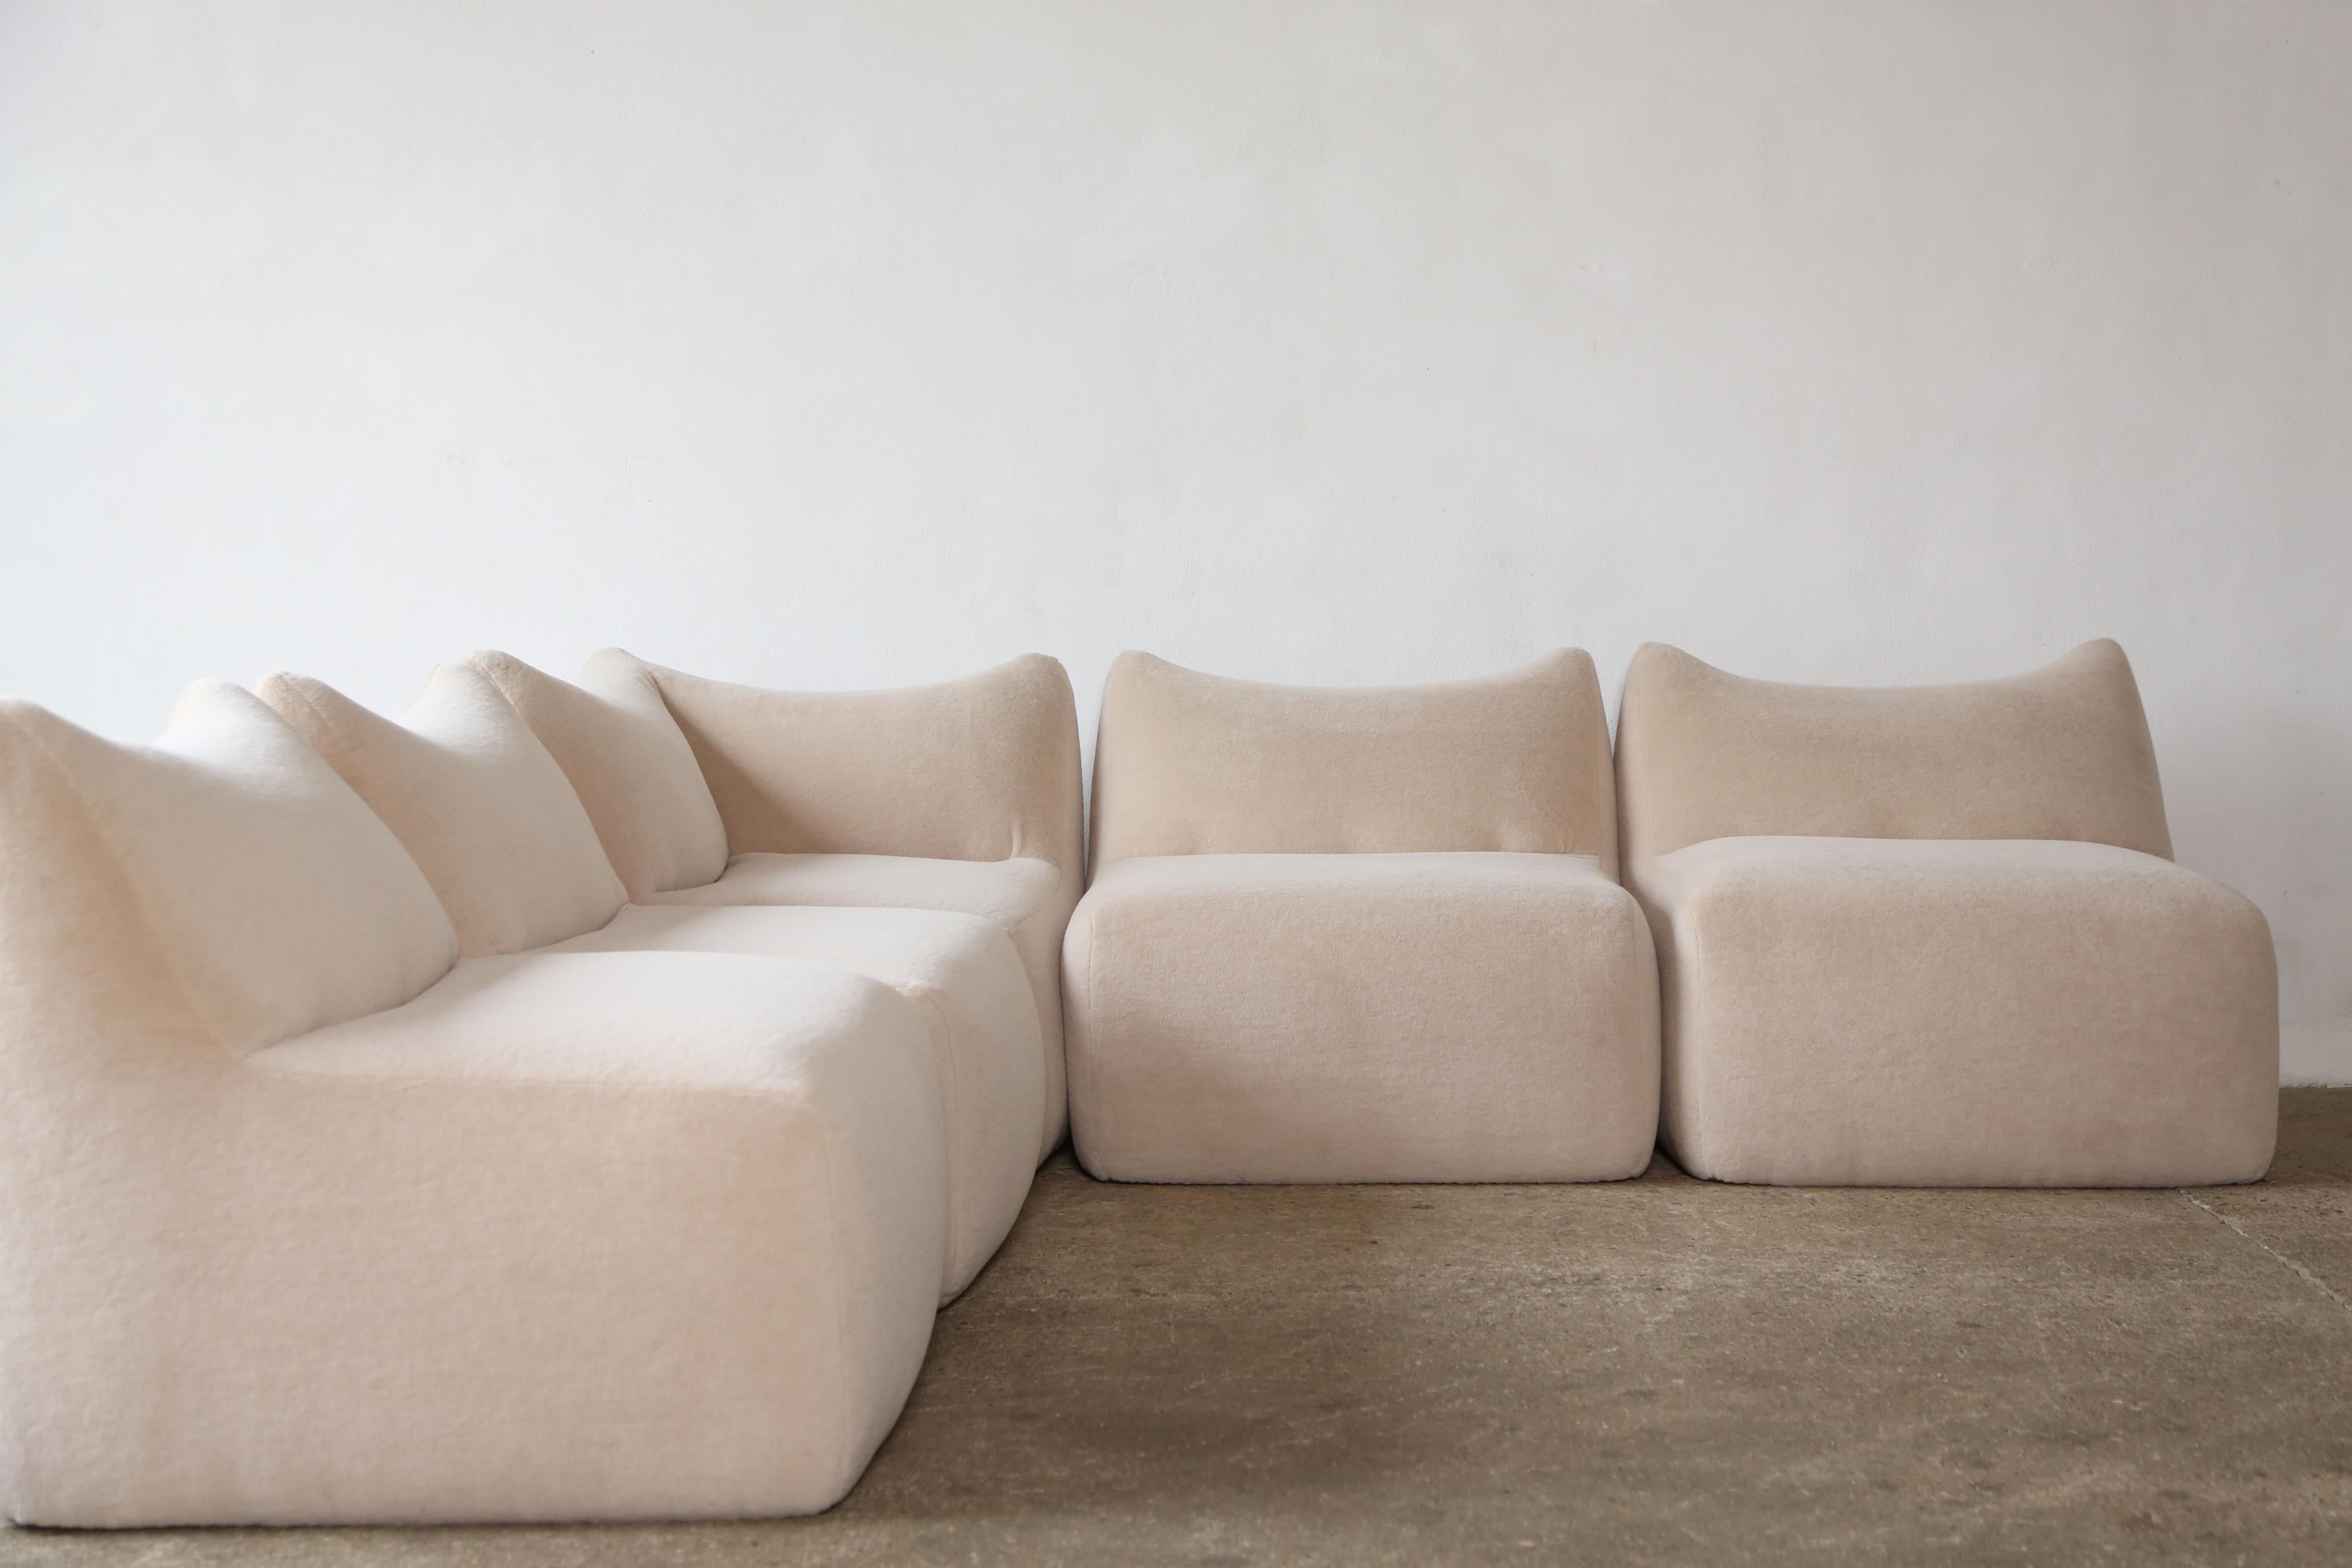 Italian Mario Bellini Le Bambole Modular Sofa, Upholstered in Alpaca, B&B Italia, 1970s For Sale